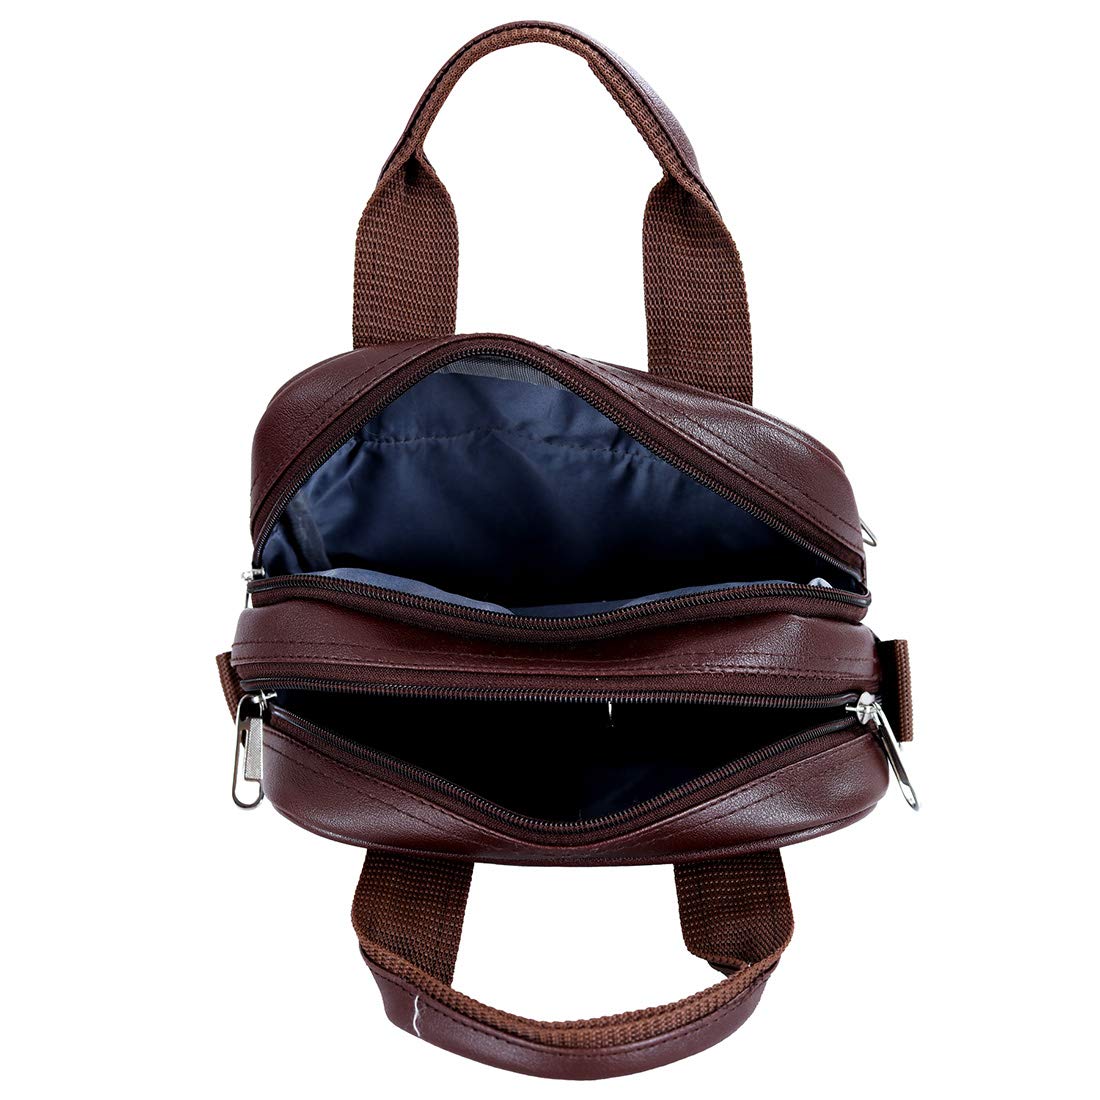 Leather World Vegan Leather Sling Cross Body Travel Office Business Messenger Bag for Men Women Daily Uses